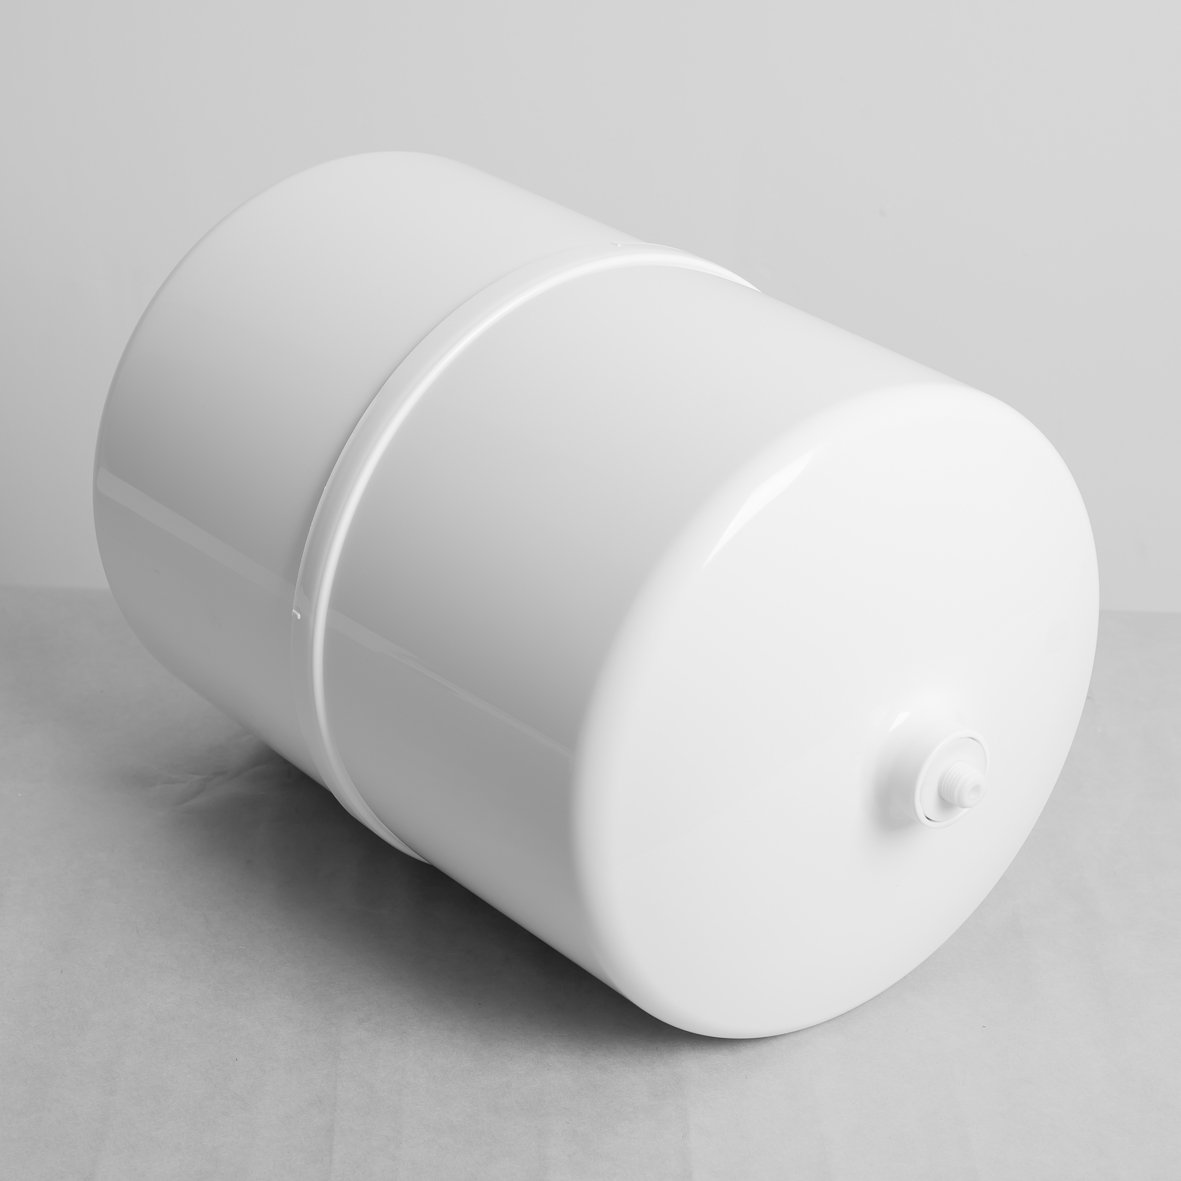 Bình áp nhựa bọc thép 3.2G dùng trong máy lọc nước R.O gia đình - kèm van (Hàng chính hãng)